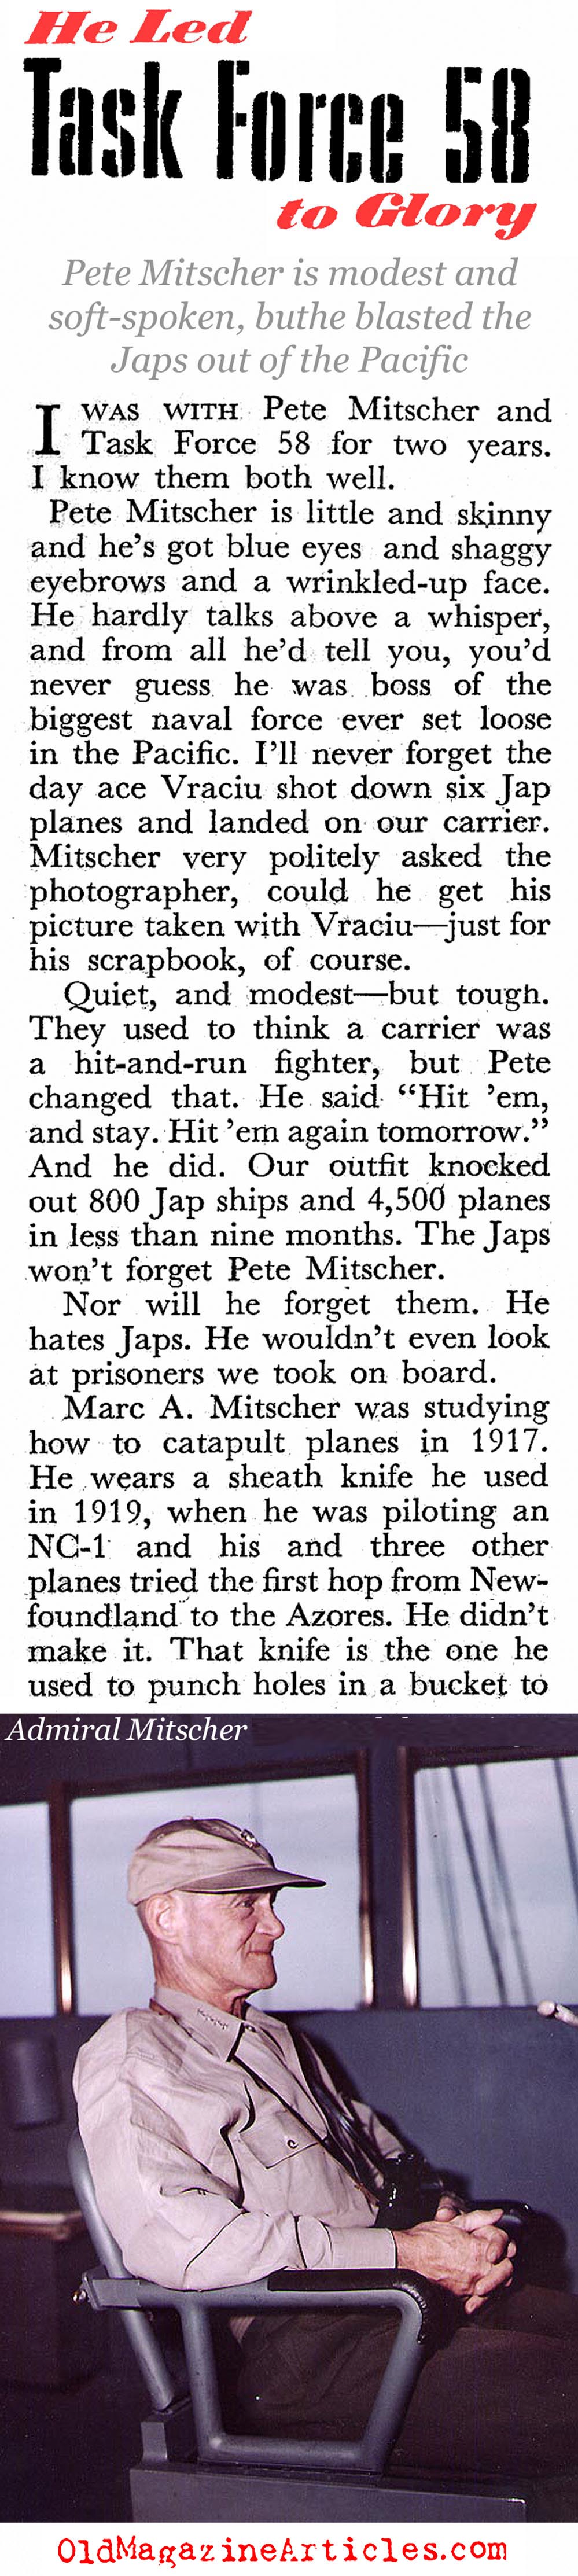 Admiral Mitscher, U.S.N. (Coronet Magazine, 1945)